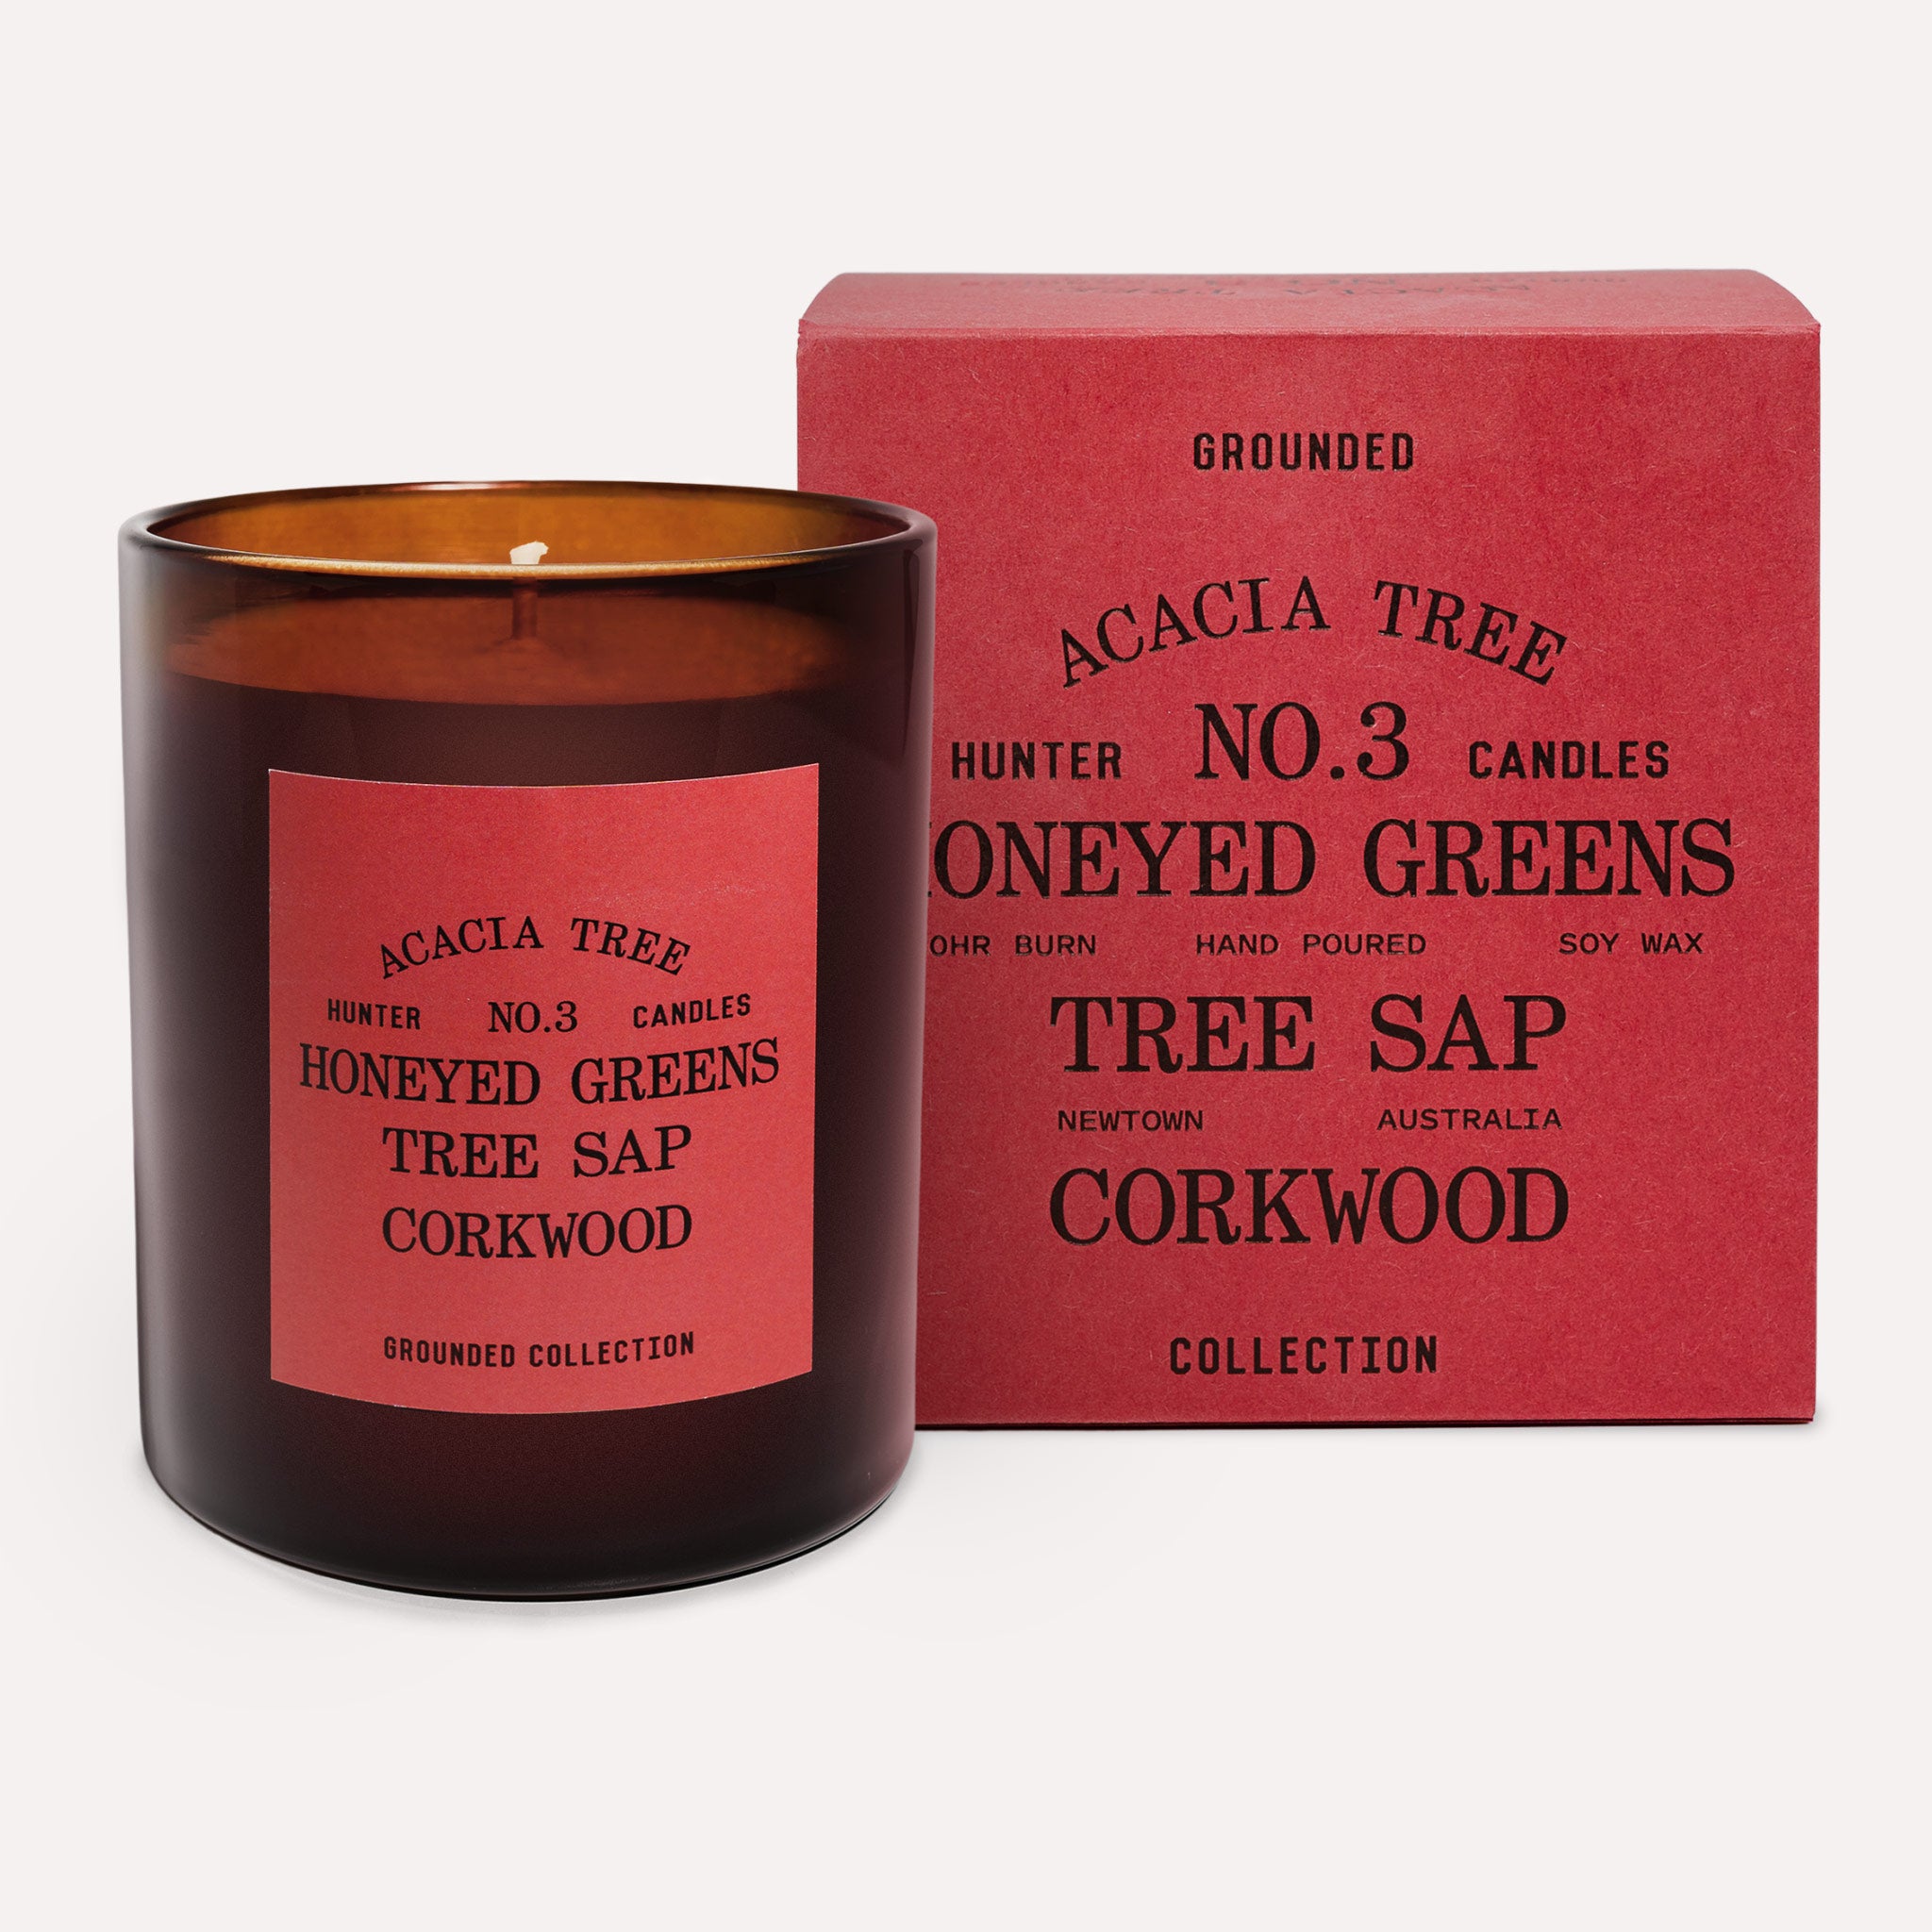 NO. 3 ACACIA TREE / honeyed greens, tree sap, corkwood